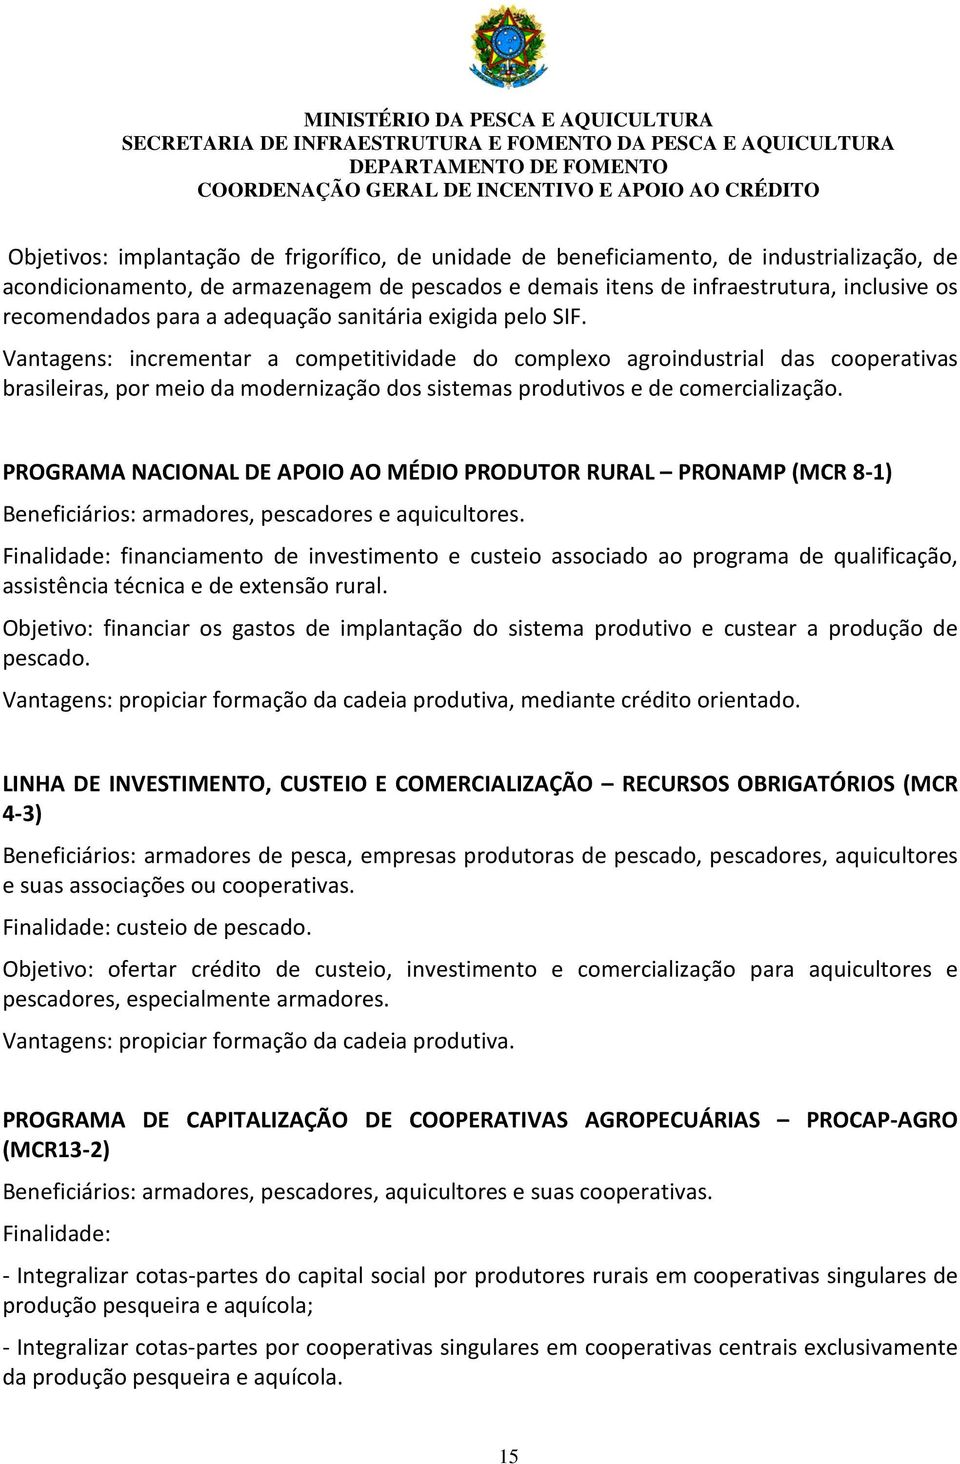 Vantagens: incrementar a competitividade do complexo agroindustrial das cooperativas brasileiras, por meio da modernização dos sistemas produtivos e de comercialização.